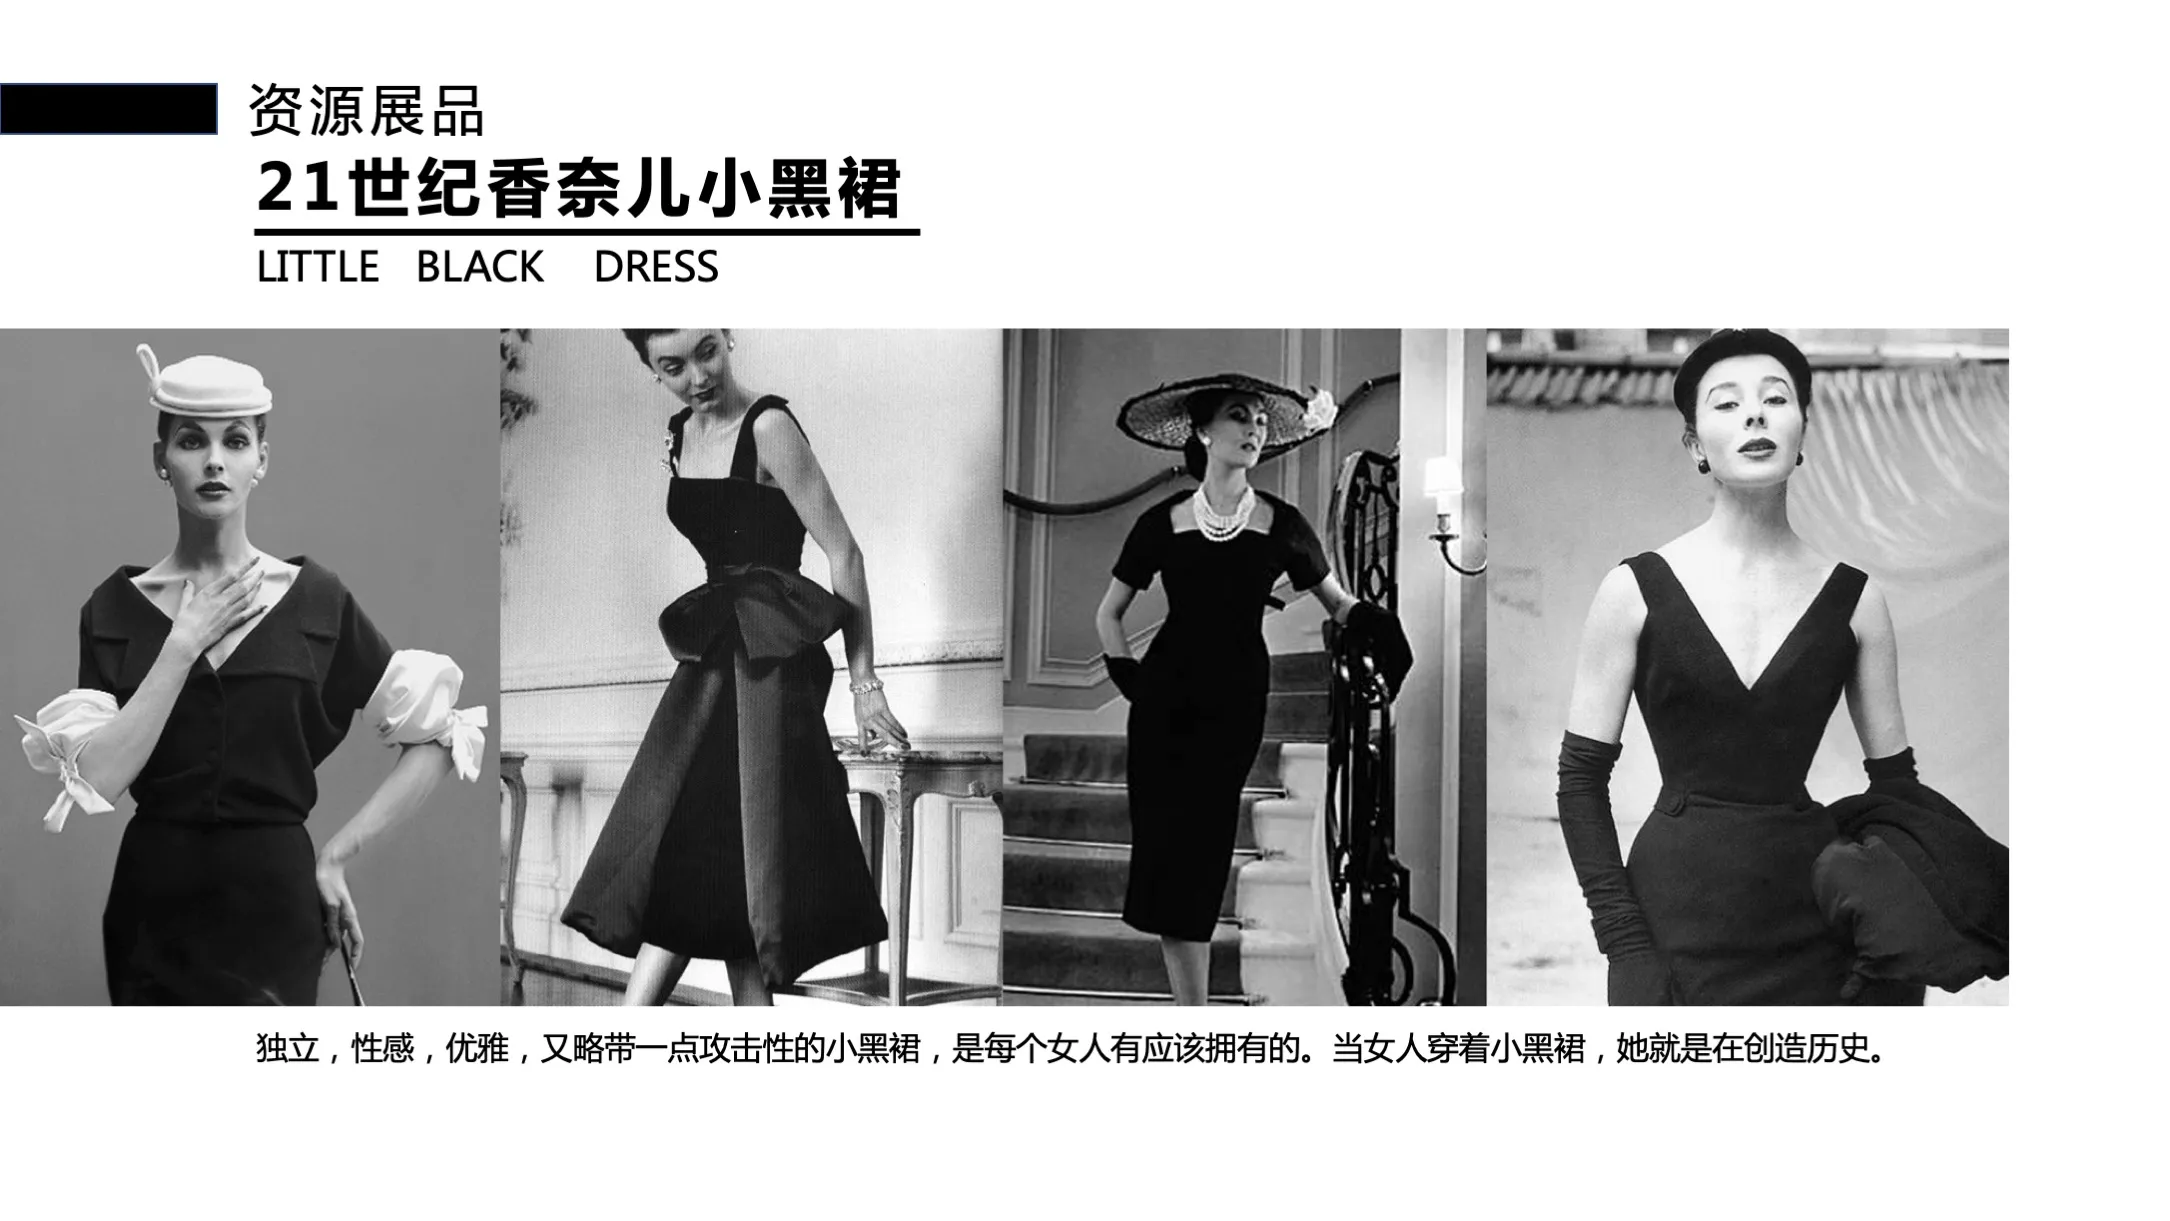 【觉醒之旅】香奈儿小黑裙艺术时尚收藏展—感映艺术出品